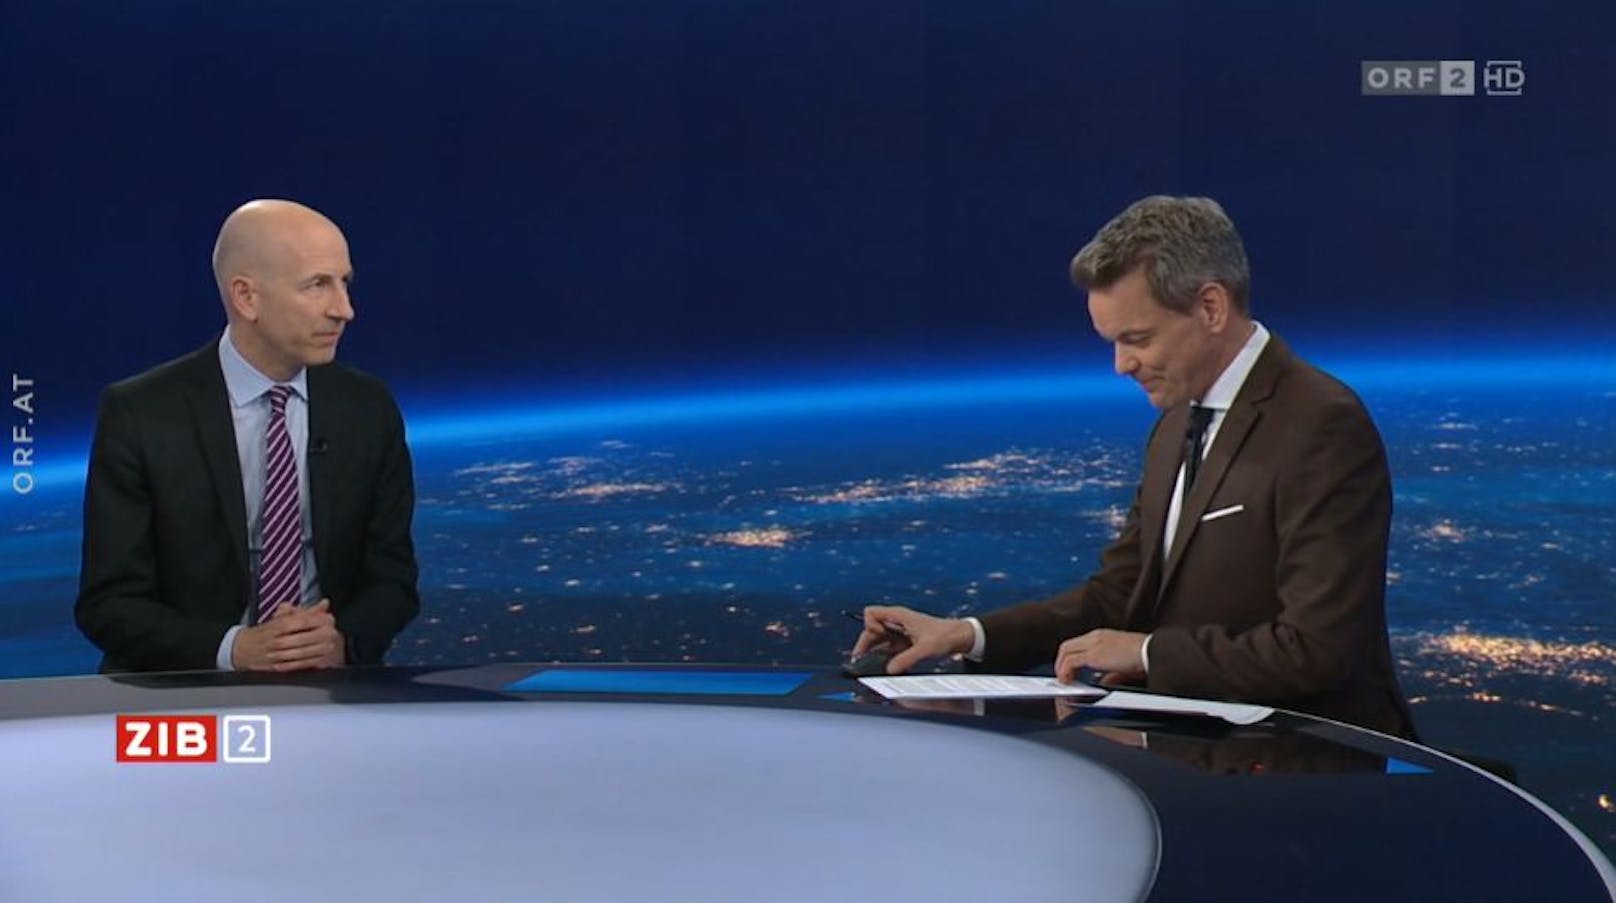 Arbeitsminister Martin Kocher (ÖVP) durfte als erster Gast das neue ZIB2-Studio des ORF im Interview mit Martin Thür einweihen (26. Februar 2023).